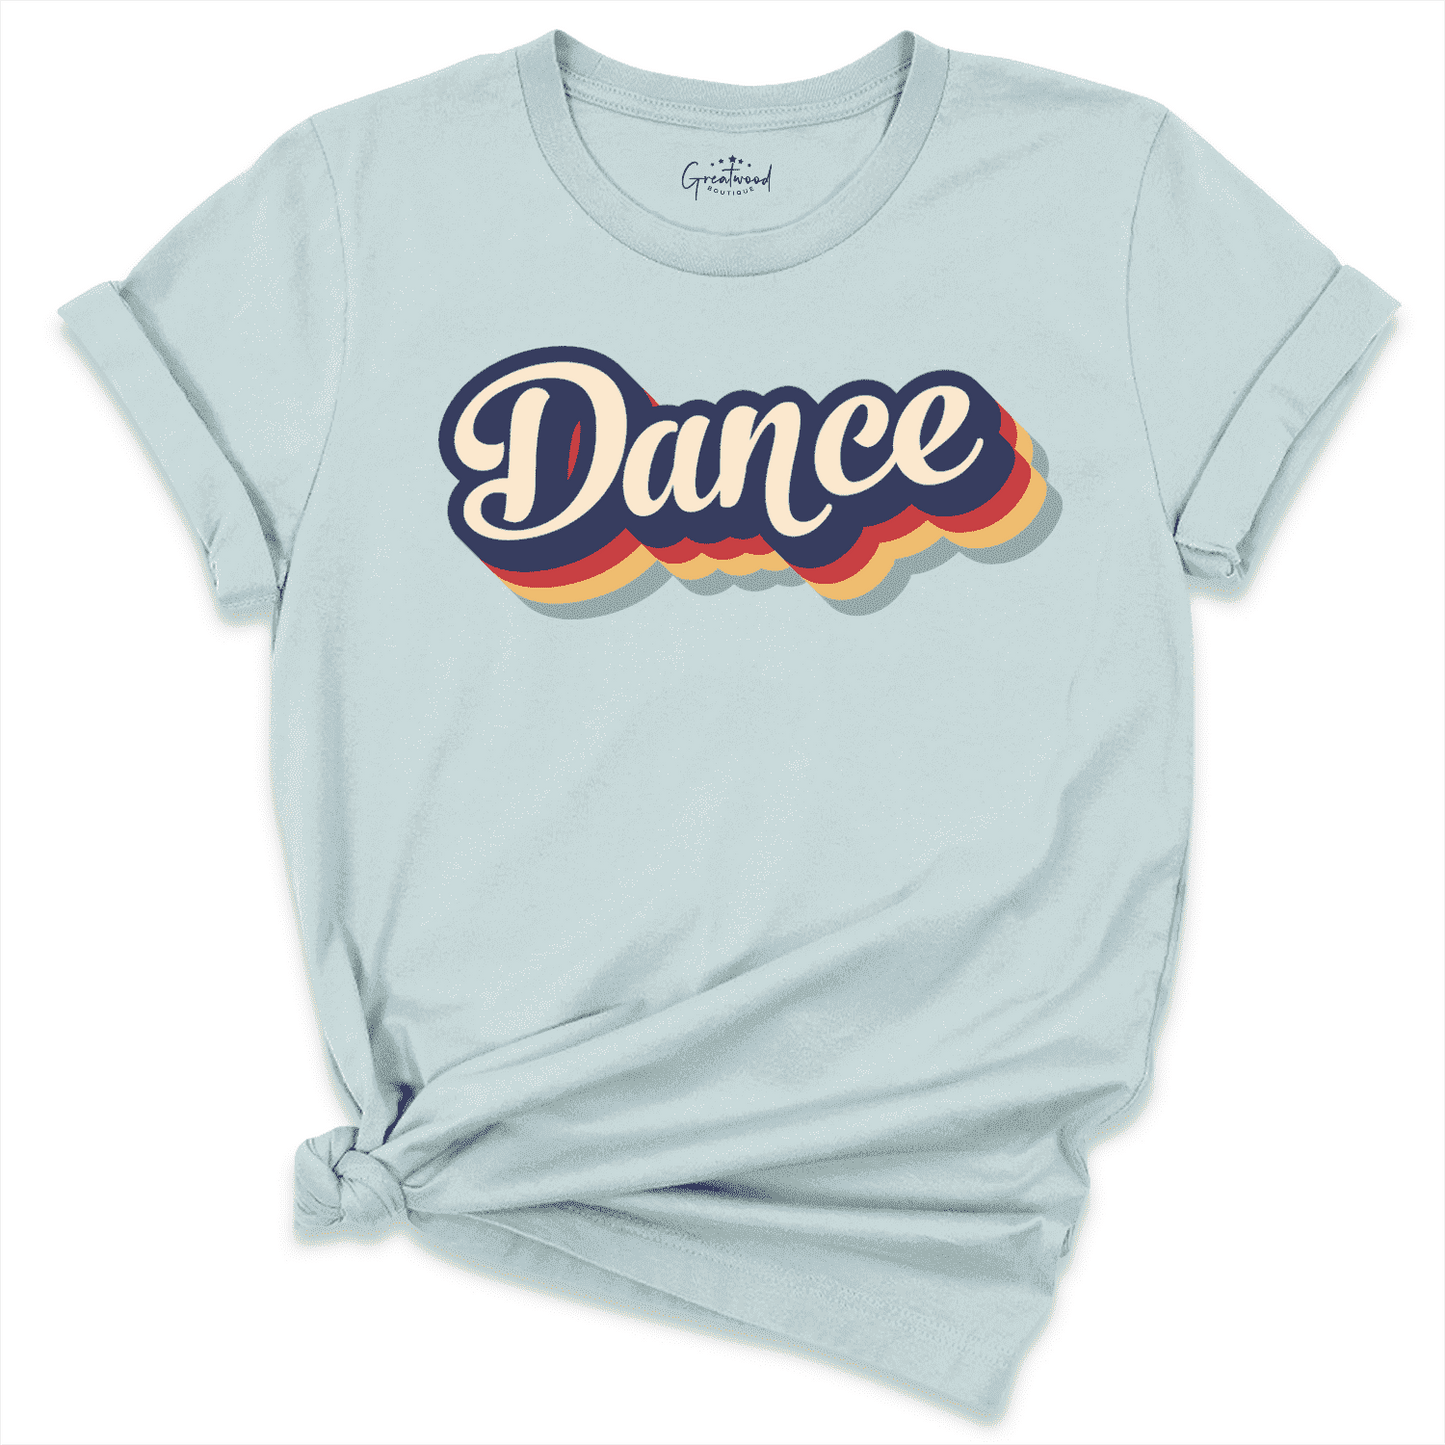 Dance Retro Shirt Blue - Greatwood Boutique